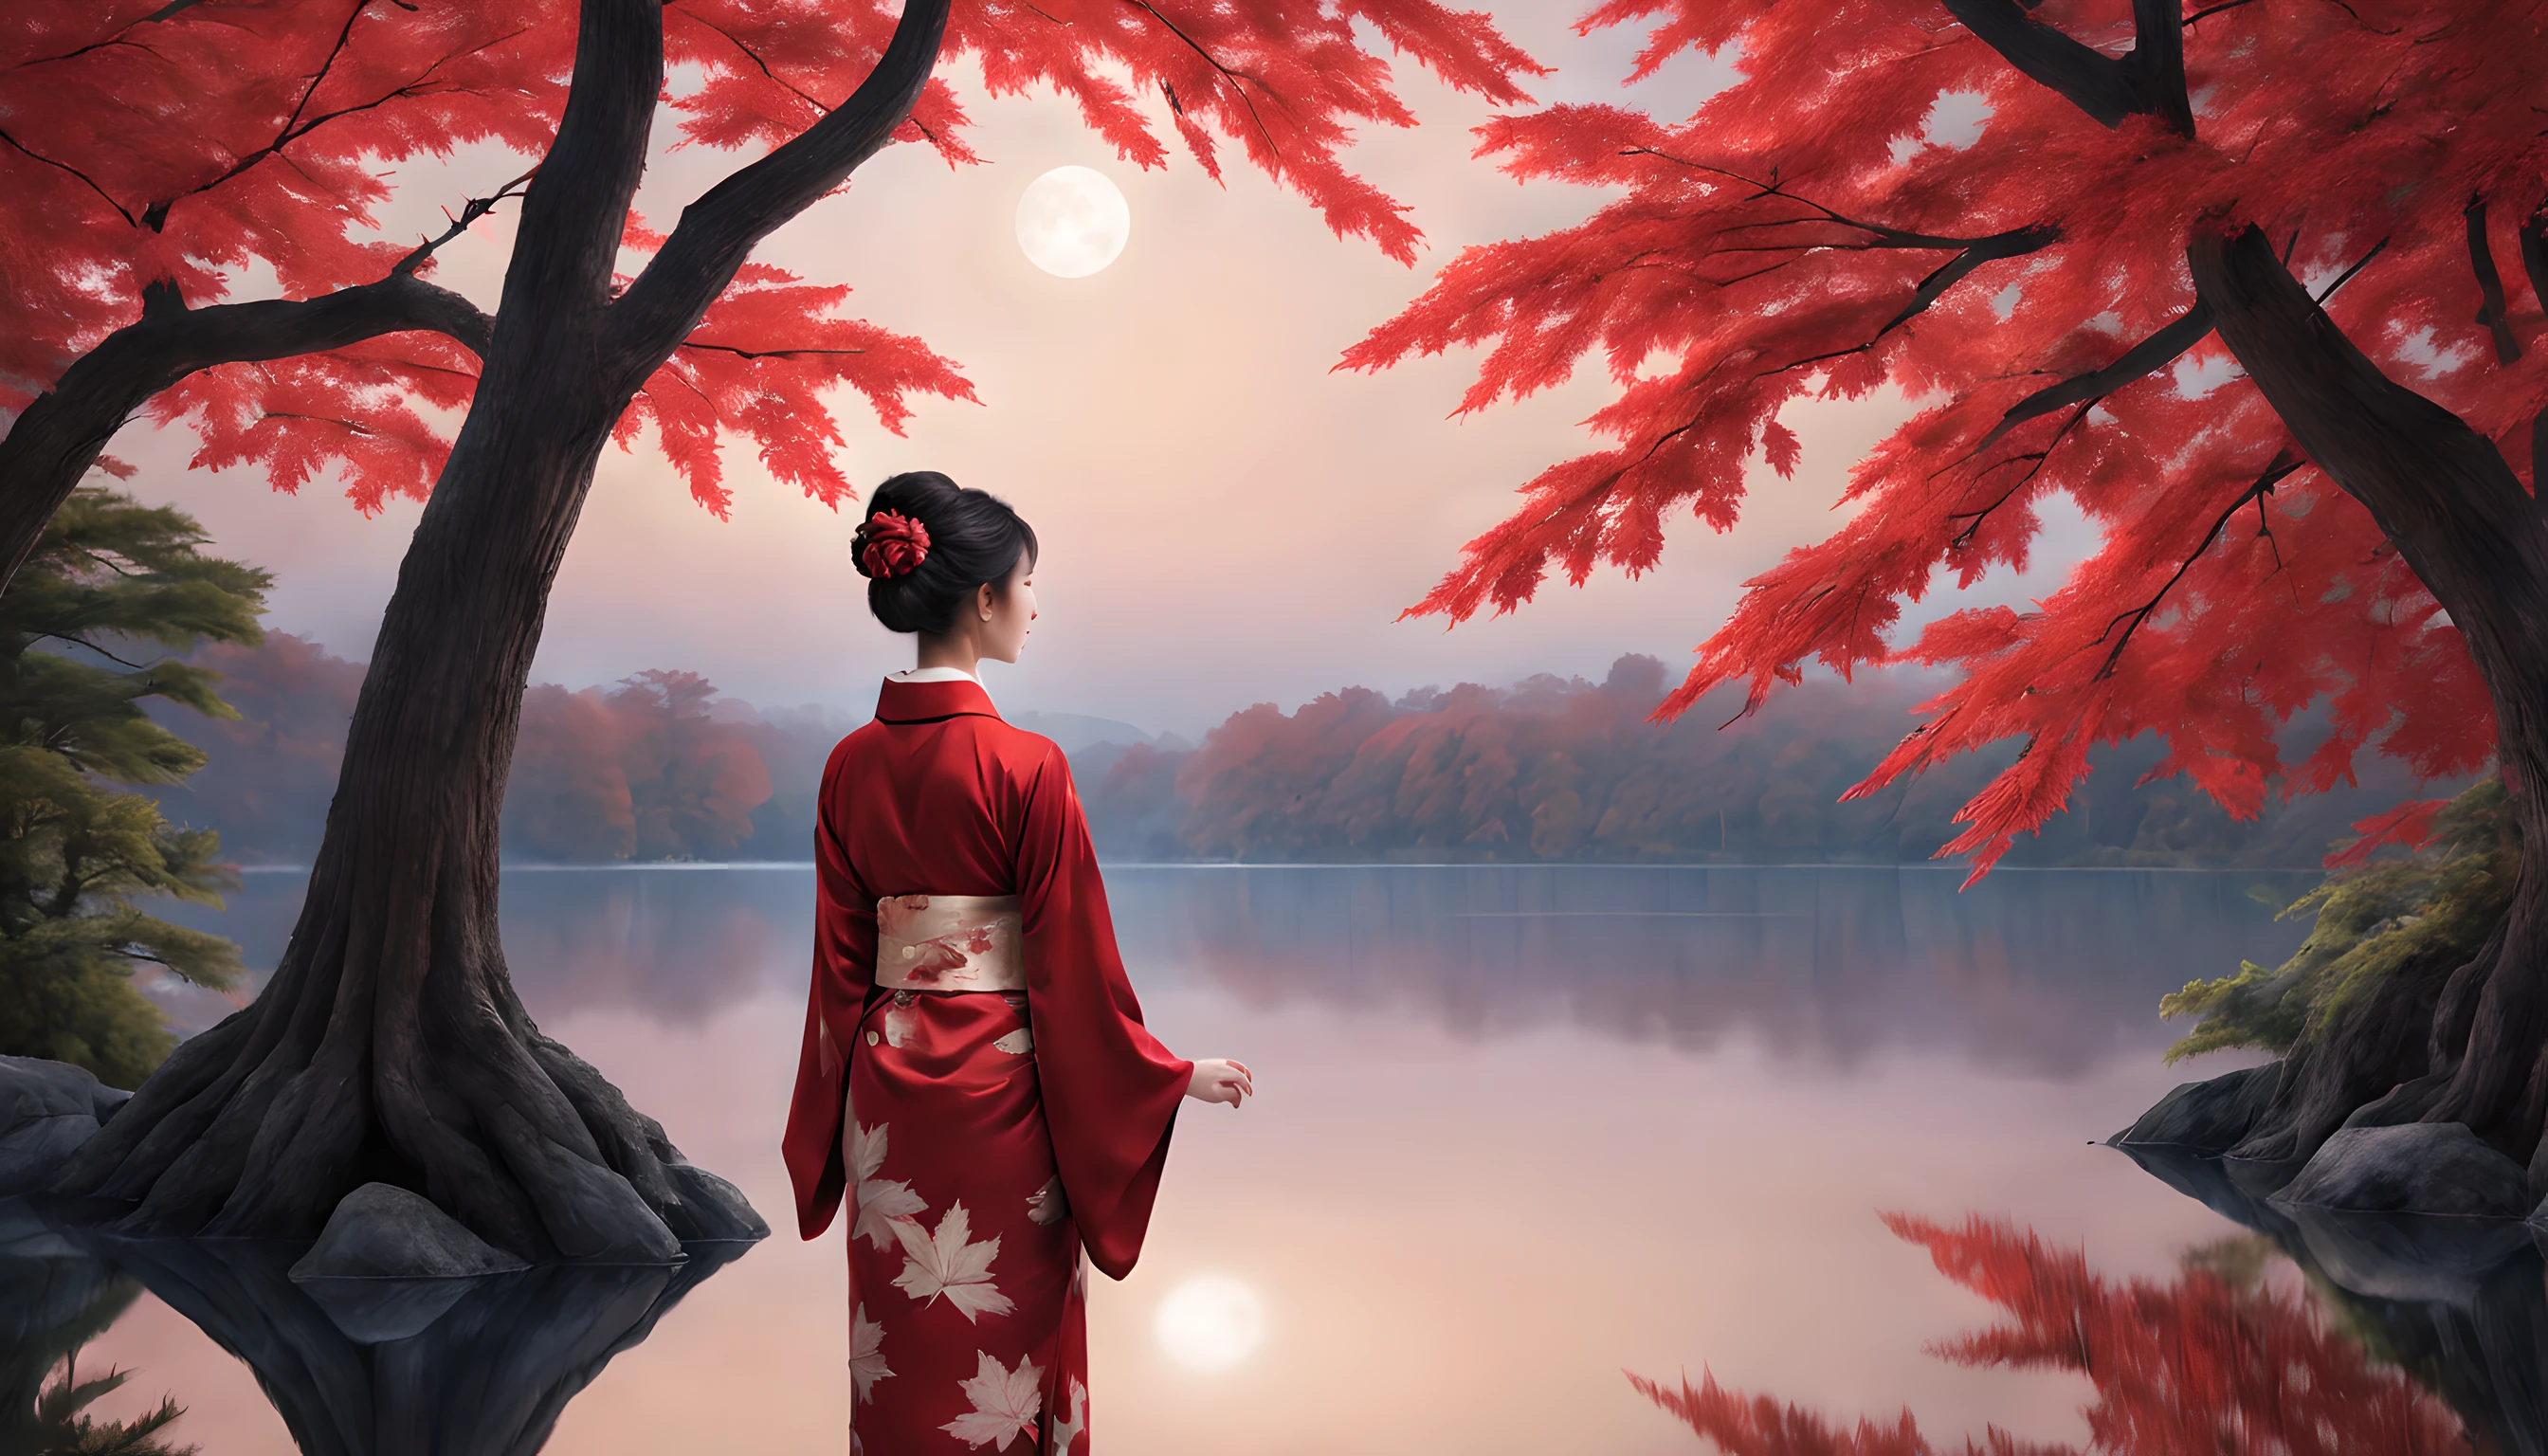 "Gestalten Sie eine bezaubernde Nachtszene mit einem ruhigen Teich, umhüllt von den feurigen Farben des herbstlichen Ahornblattes. Die Komposition sollte die Prominenz der Ahornblätter und des majestätischen Ahornbaums betonen, der in der Nähe steht.

Im Vordergrund, eine Japanerin in ihren Vierzigern steht anmutig, in einen leuchtend roten Kimono gehüllt. Der Kimono betont ihre Eleganz, und ihre Schönheit strahlt im Mondlicht. Sie ist eine Vision von zeitloser Anziehungskraft, Die Essenz der Saison einfangen.

Die Frau blickt auf den schimmernden Teich, wo die Spiegelung der Ahornblätter auf der Wasseroberfläche tanzt. Ihr Ausdruck ist von heiterer Kontemplation geprägt, während sie in die ruhige Schönheit der Nacht eintaucht.

Im Hintergrund ist der prächtige Ahornbaum zu sehen, seine Zweige sind mit prächtigen Blättern geschmückt, die das Mondlicht einzufangen scheinen. Der Teich spiegelt die ätherische Szene, den Zauber des Augenblicks noch verstärken.

Die Gesamtkomposition sollte ein Gefühl der Gelassenheit und Ehrfurcht vor der Schönheit der Natur vermitteln. Stellen Sie sicher, dass die bezaubernde Schönheit der Frau und die Brillanz der Ahornblätter in diesem faszinierenden Herbstbild im Mittelpunkt stehen."